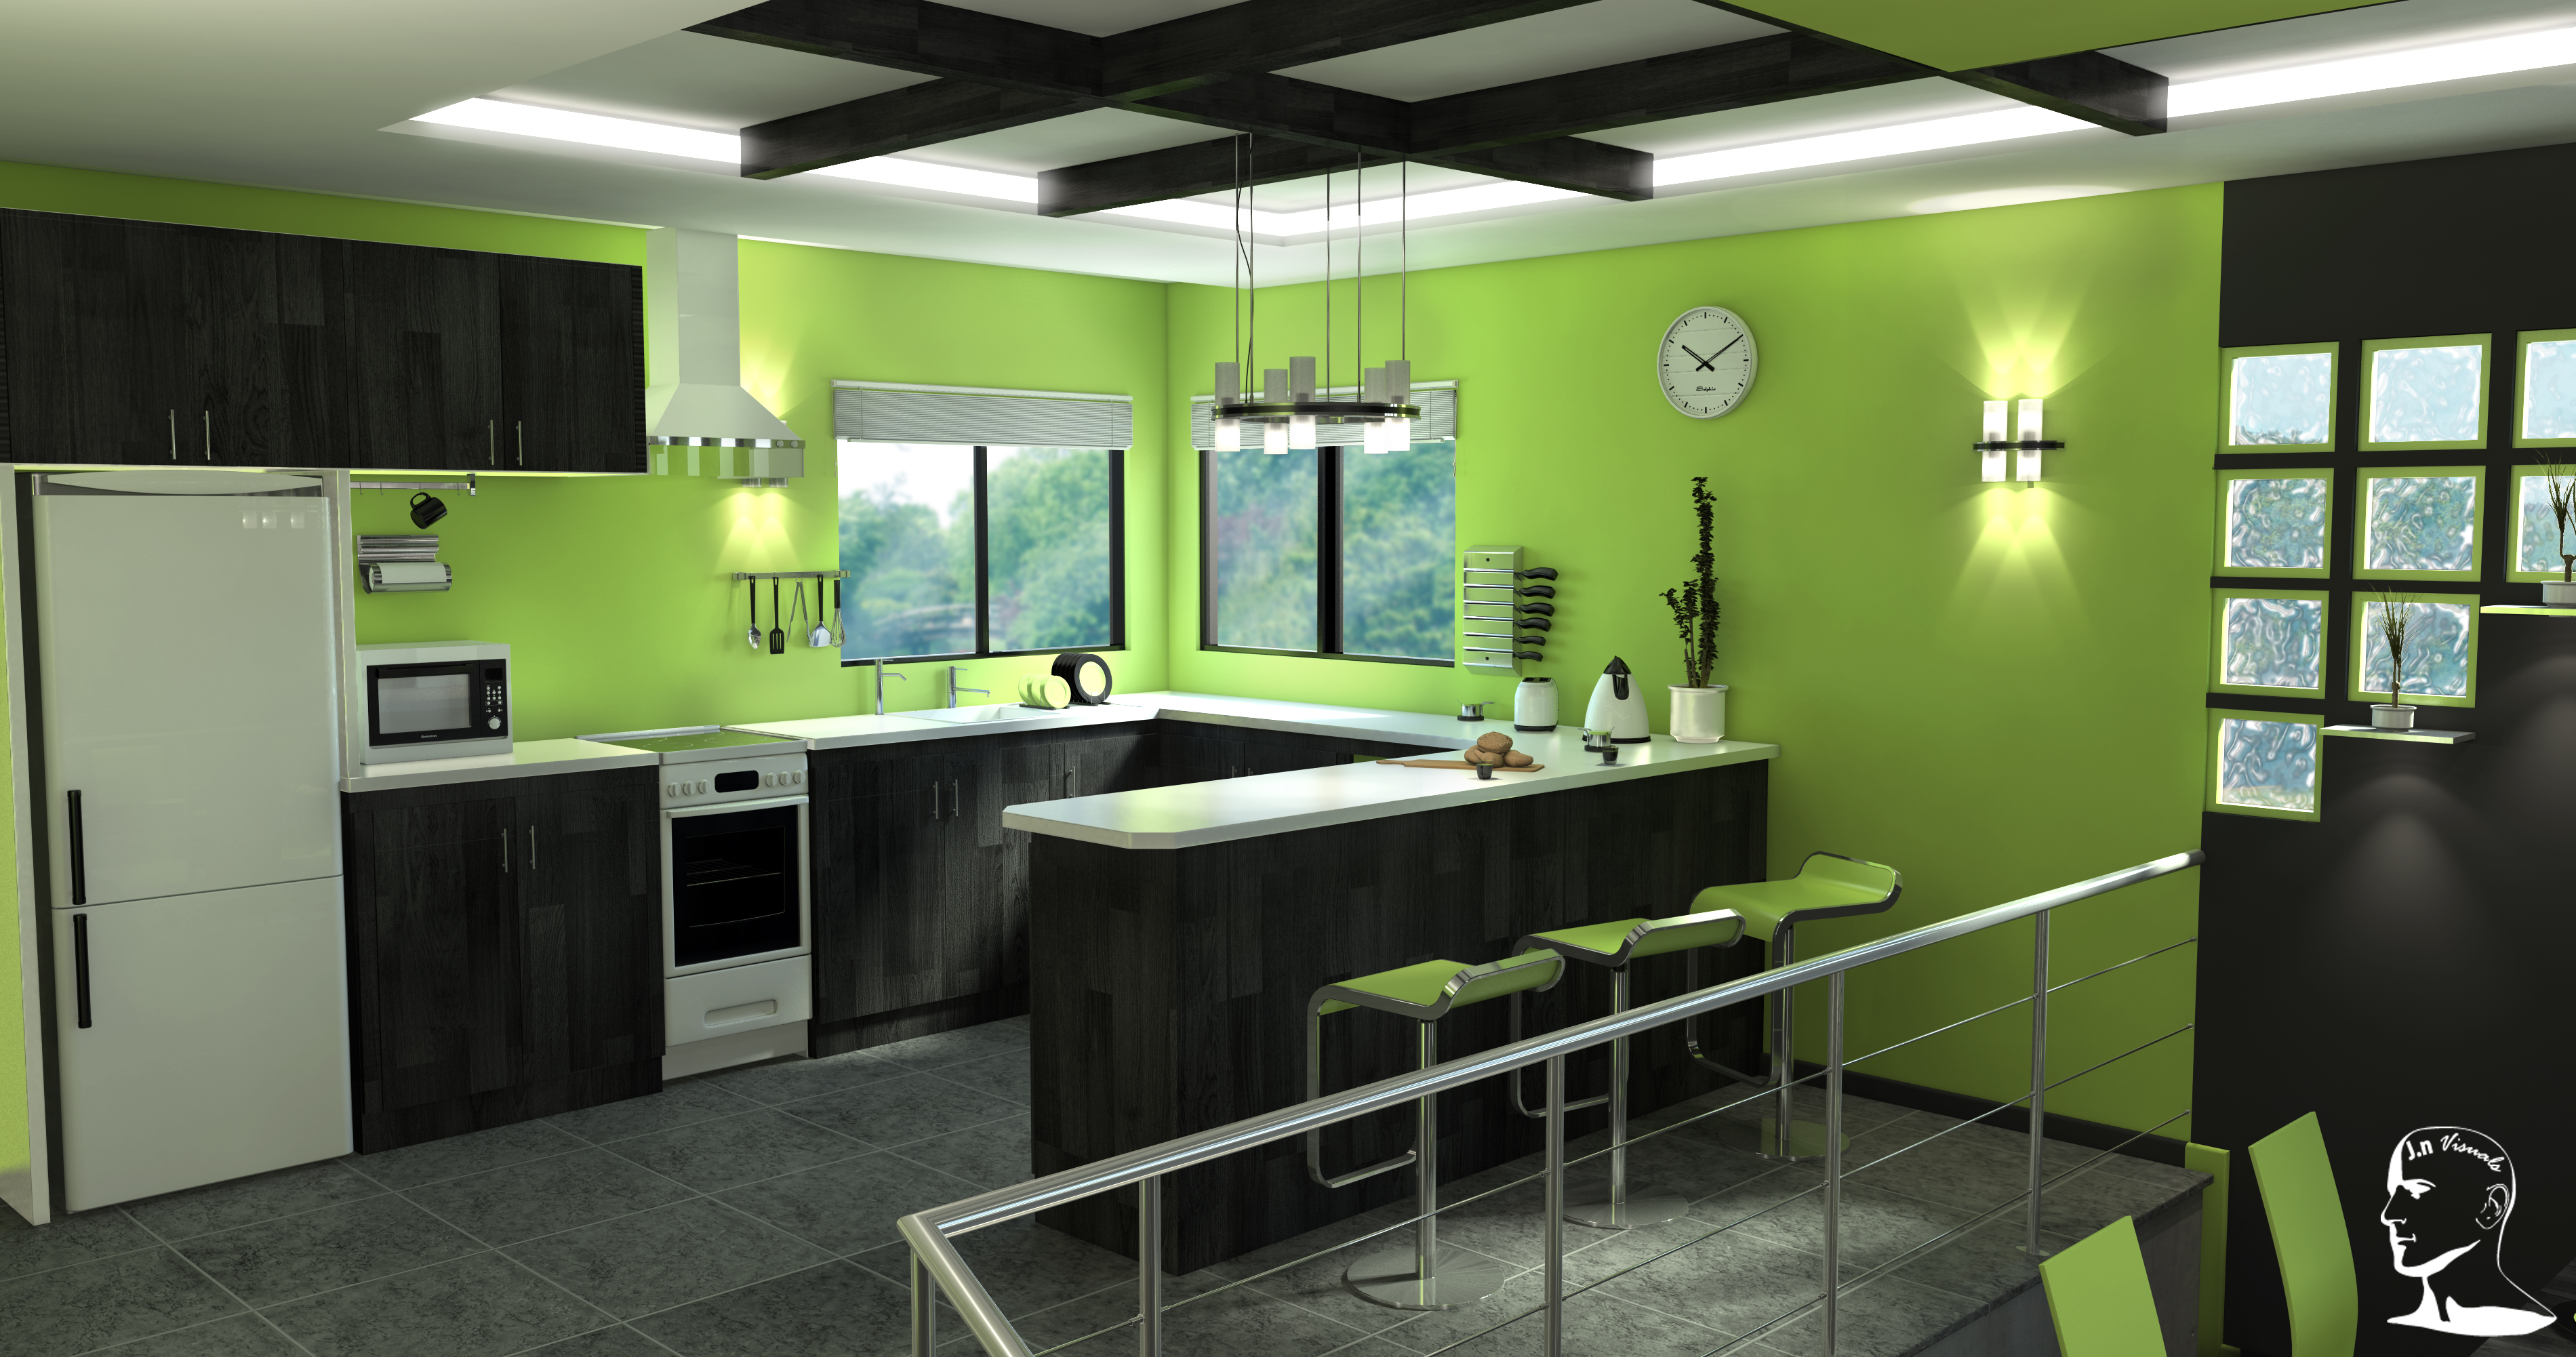 Черно зеленая кухня. Кухня в зеленых тонах. Кухня зеленого цвета. Интерьер кухни в зеленых тонах. Салатовые стены на кухне.